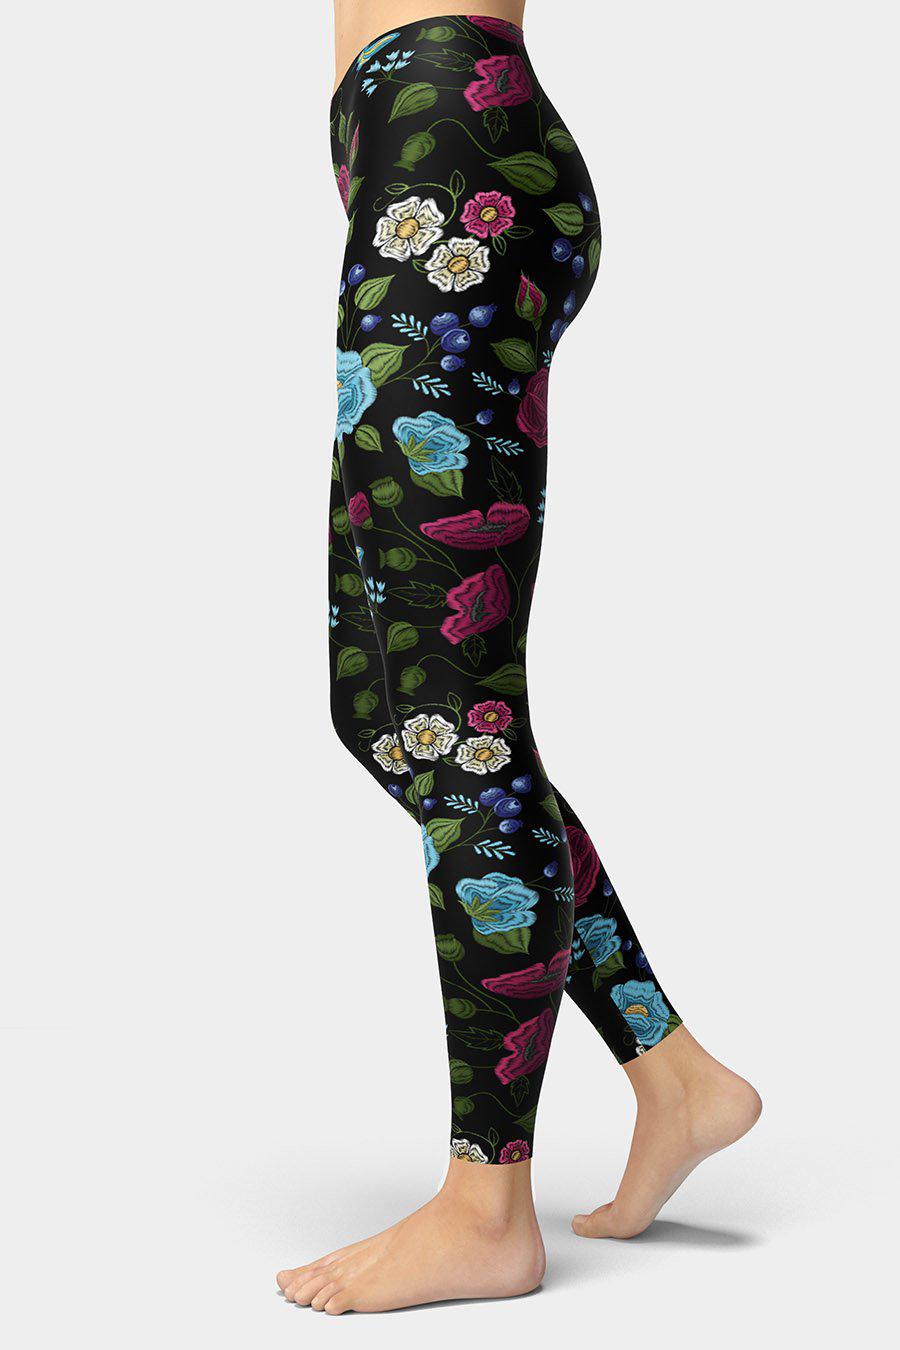 Embroidery Print Floral Leggings - SeeMyLeggings